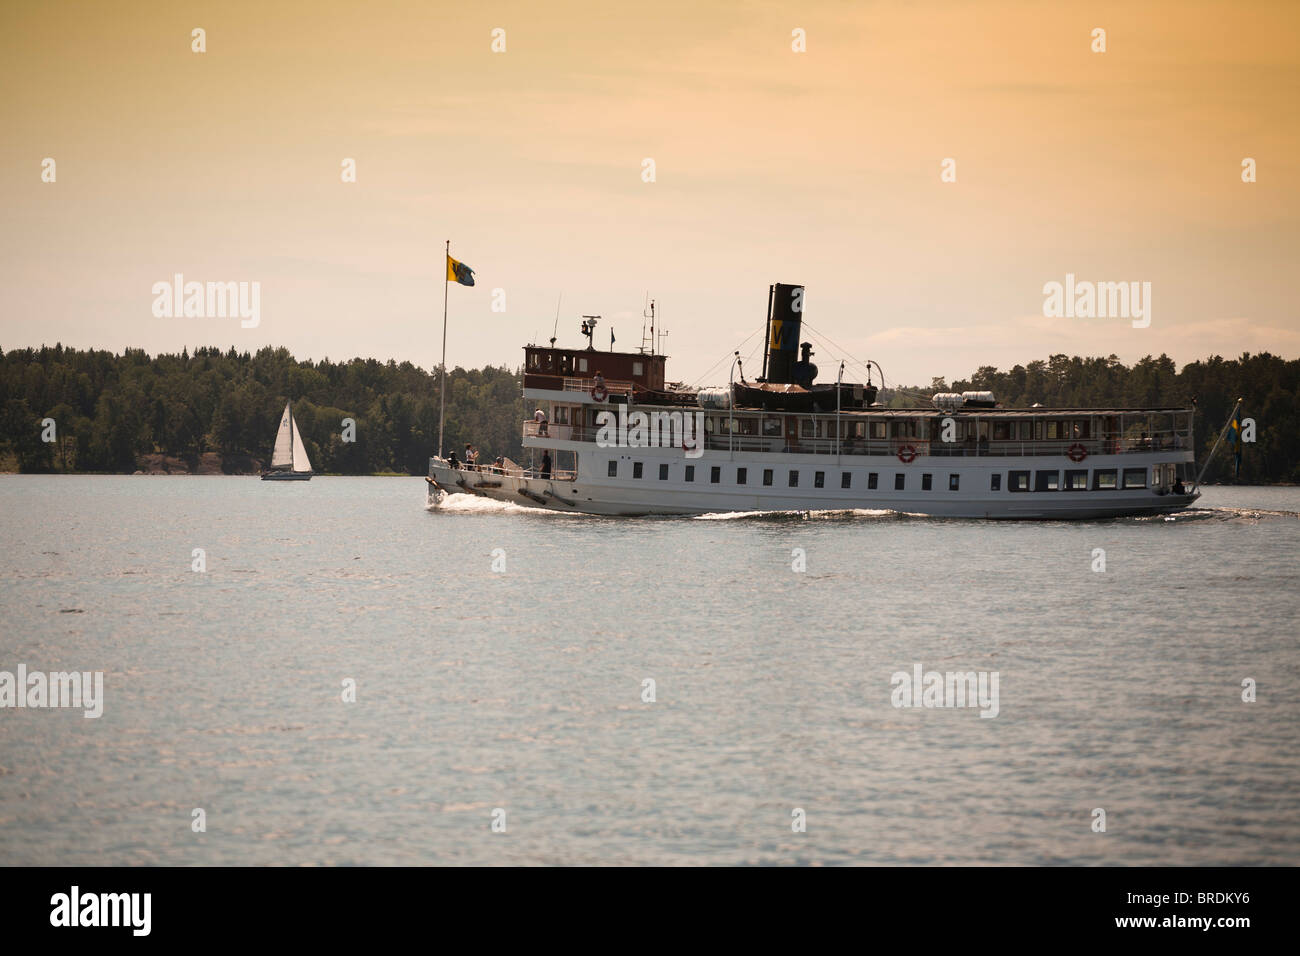 Nave passeggeri in svedese arcipelago di Stoccolma, yacht a vela dietro. Foto Stock